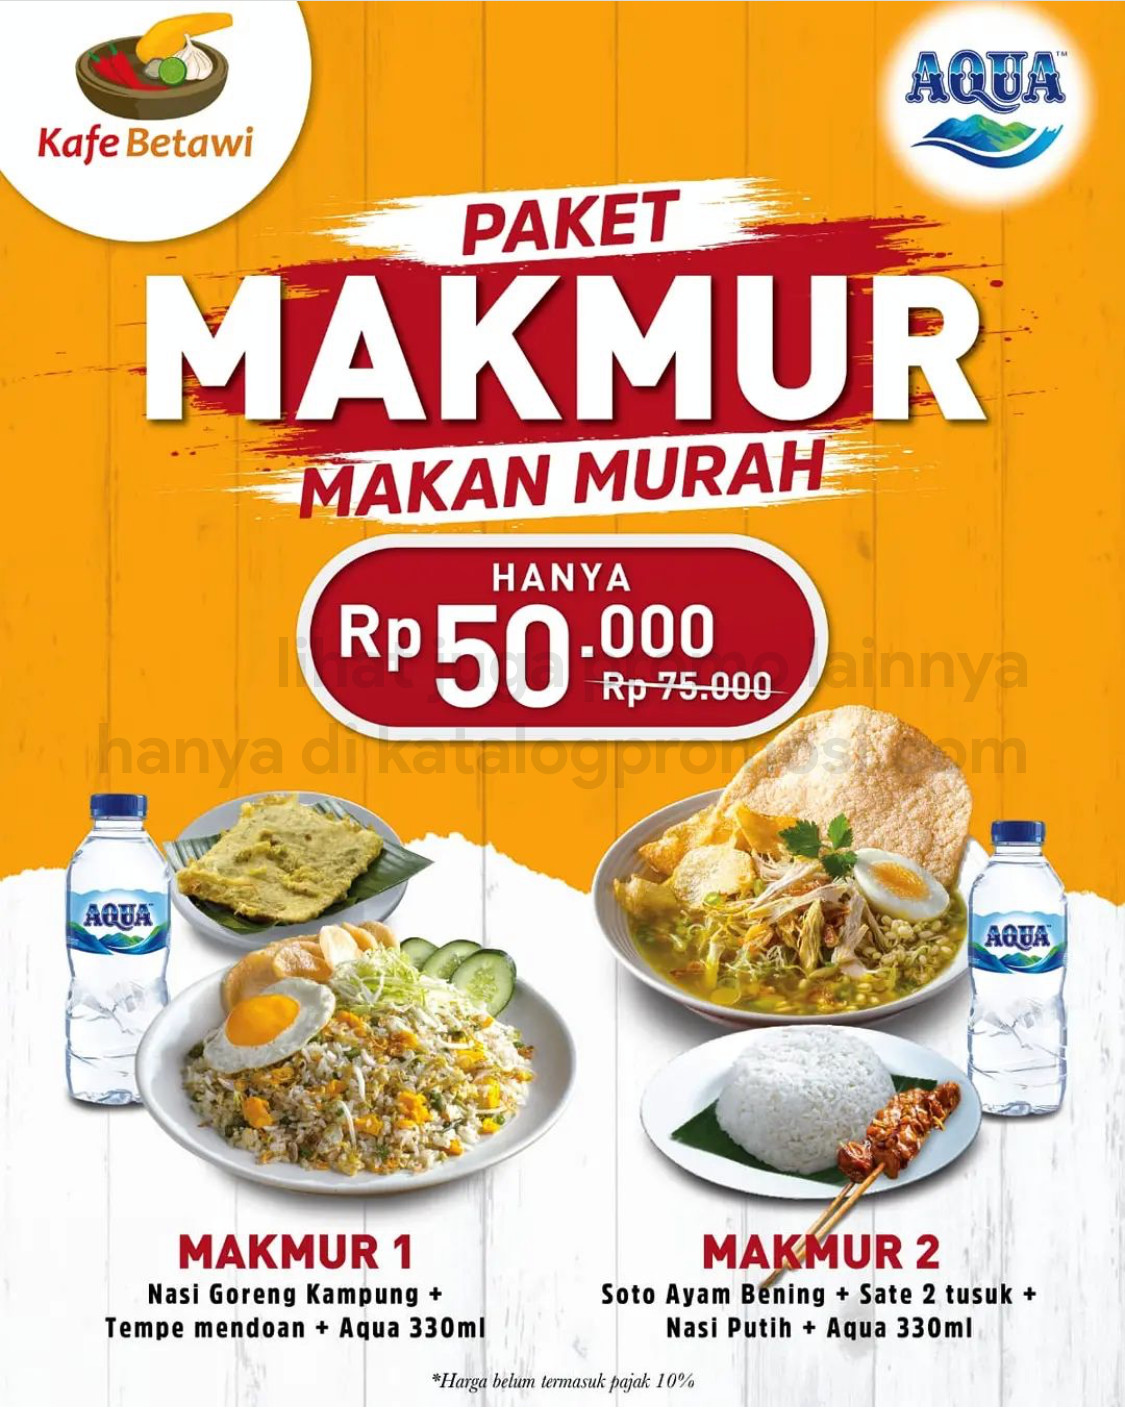 Promo KAFE BETAWI PAKET MAKMUR / MAKAN MURAH cuma Rp. 50.000